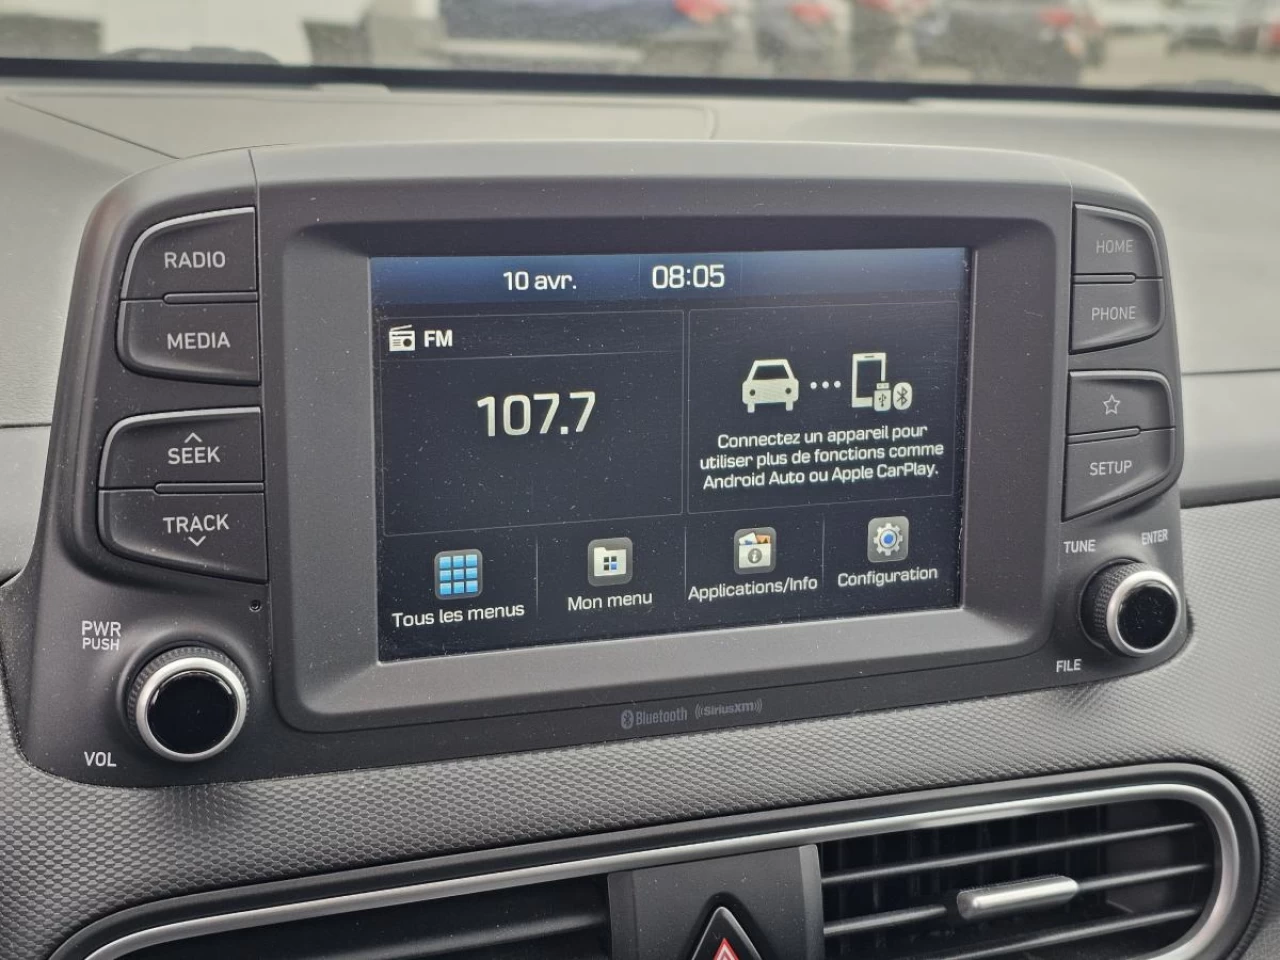 2019 Hyundai Kona LUXURY - AWD - TOIT - CUIR - CARPLAY Image principale